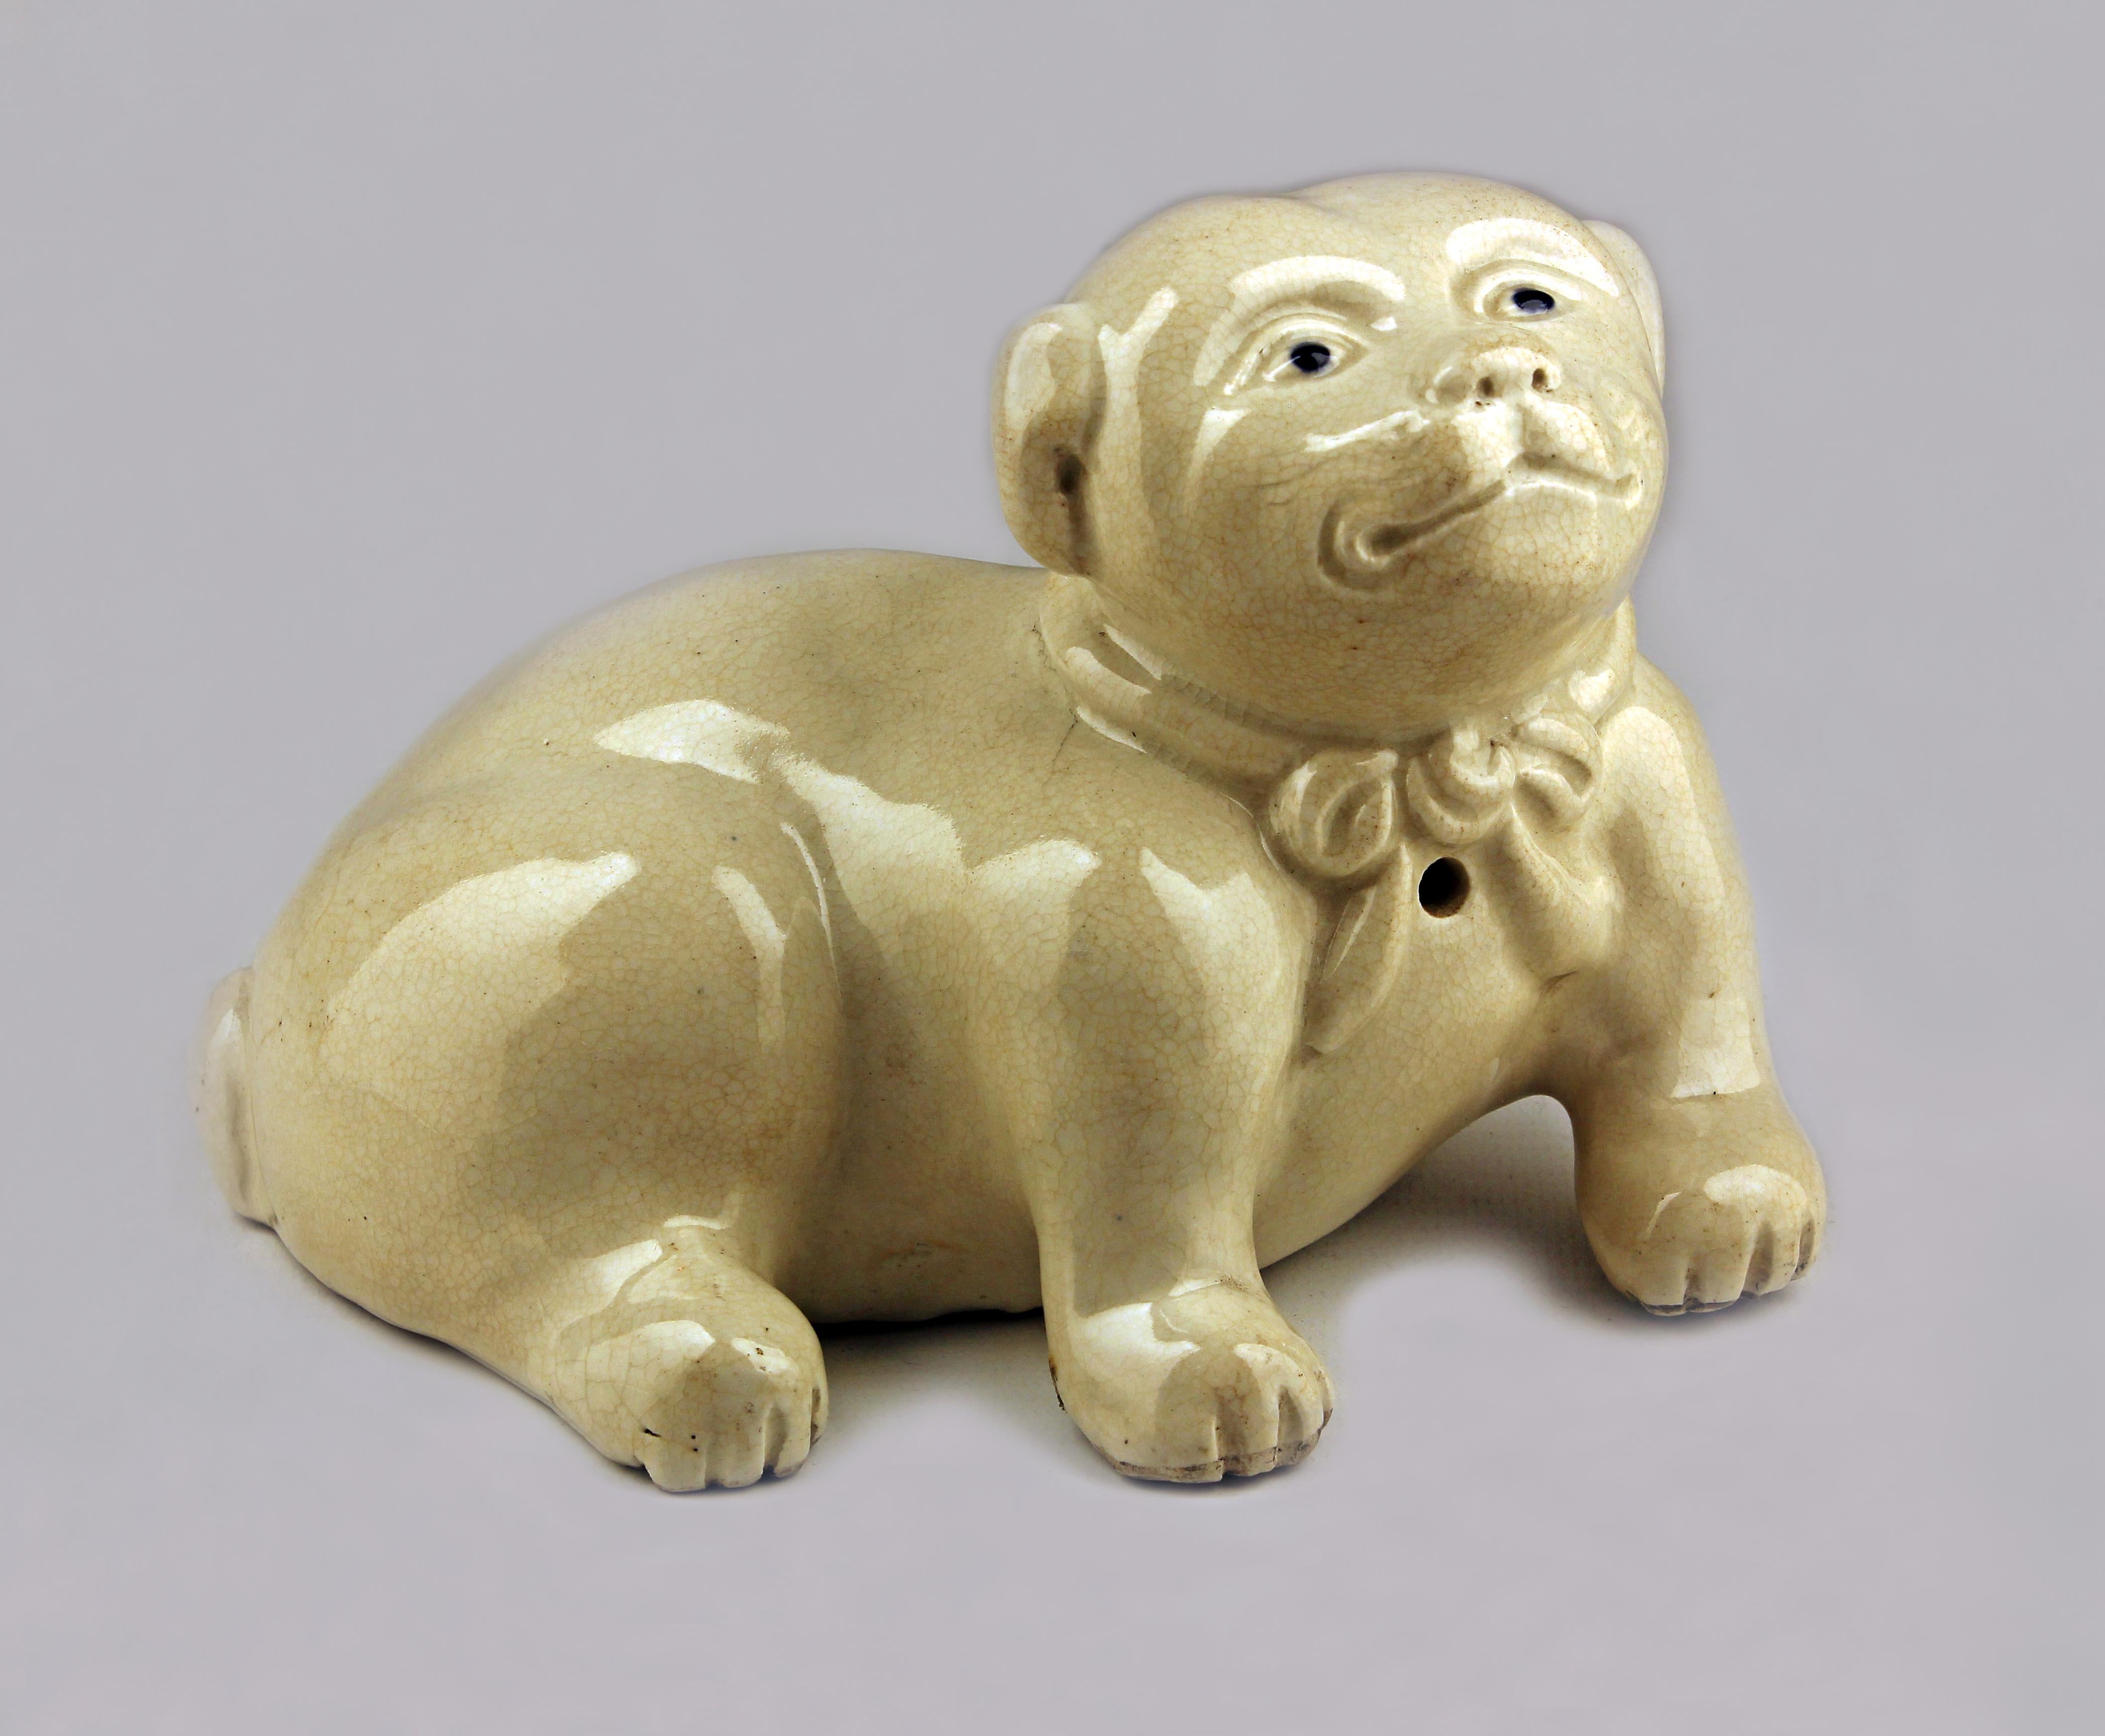 Japanische glasierte Porzellanskulptur eines Hundes aus dem späten 18. Jahrhundert/Edo-Meiji-Zeit

Von: unbekannt
MATERIAL: Porzellan
Technik: geformt, gepresst, glasiert
Abmessungen: 5,5 in x 7,5 in x 5
Datum: Ende des 18. Jahrhunderts
Stil: Edo,